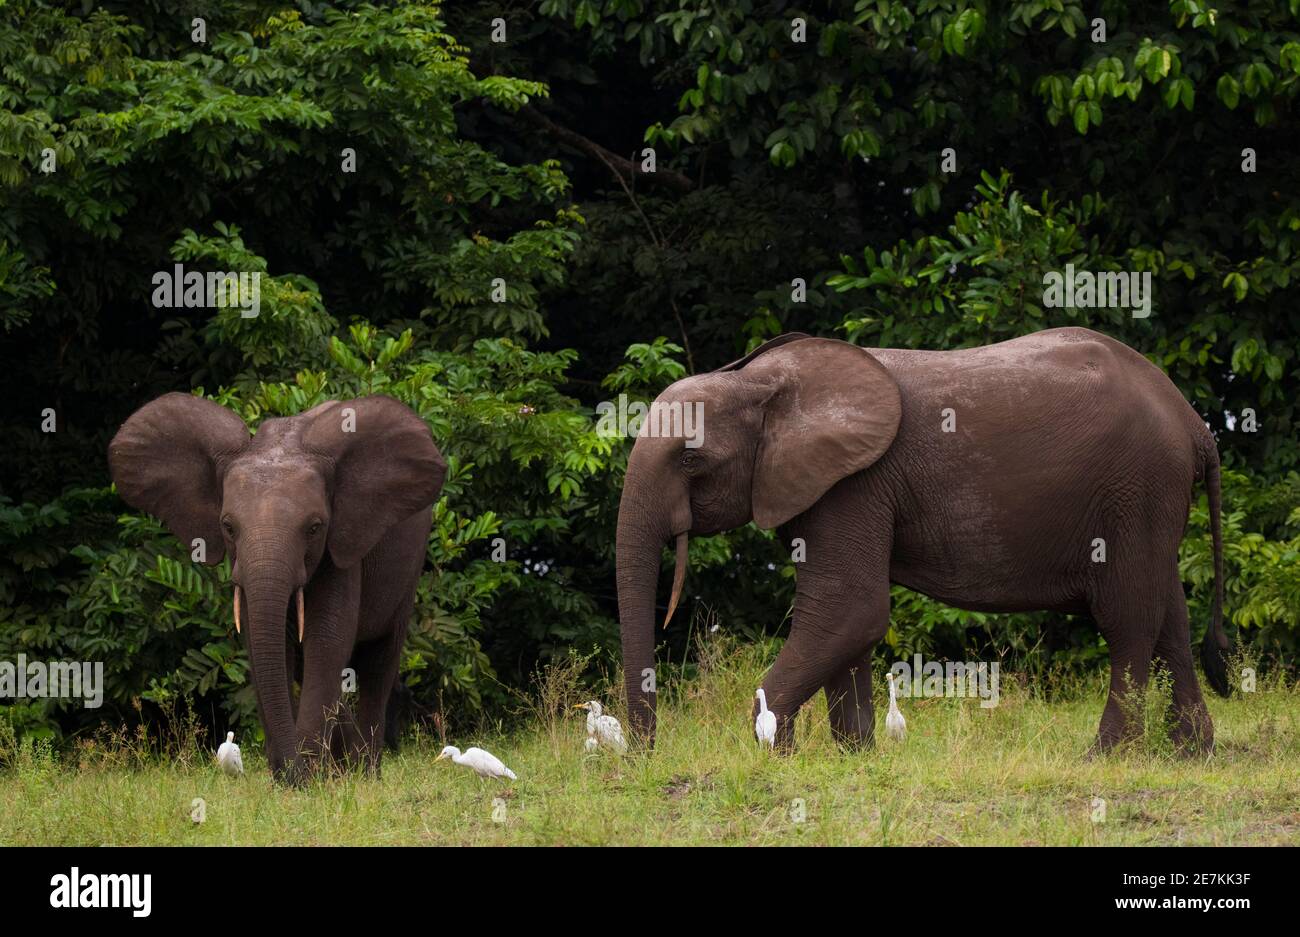 Elefantes forestales africanos (Loxodonta cyclotis) con Garza de ganado (Bubulcus ibis), Parque Nacional Loango, Gabón. Foto de stock